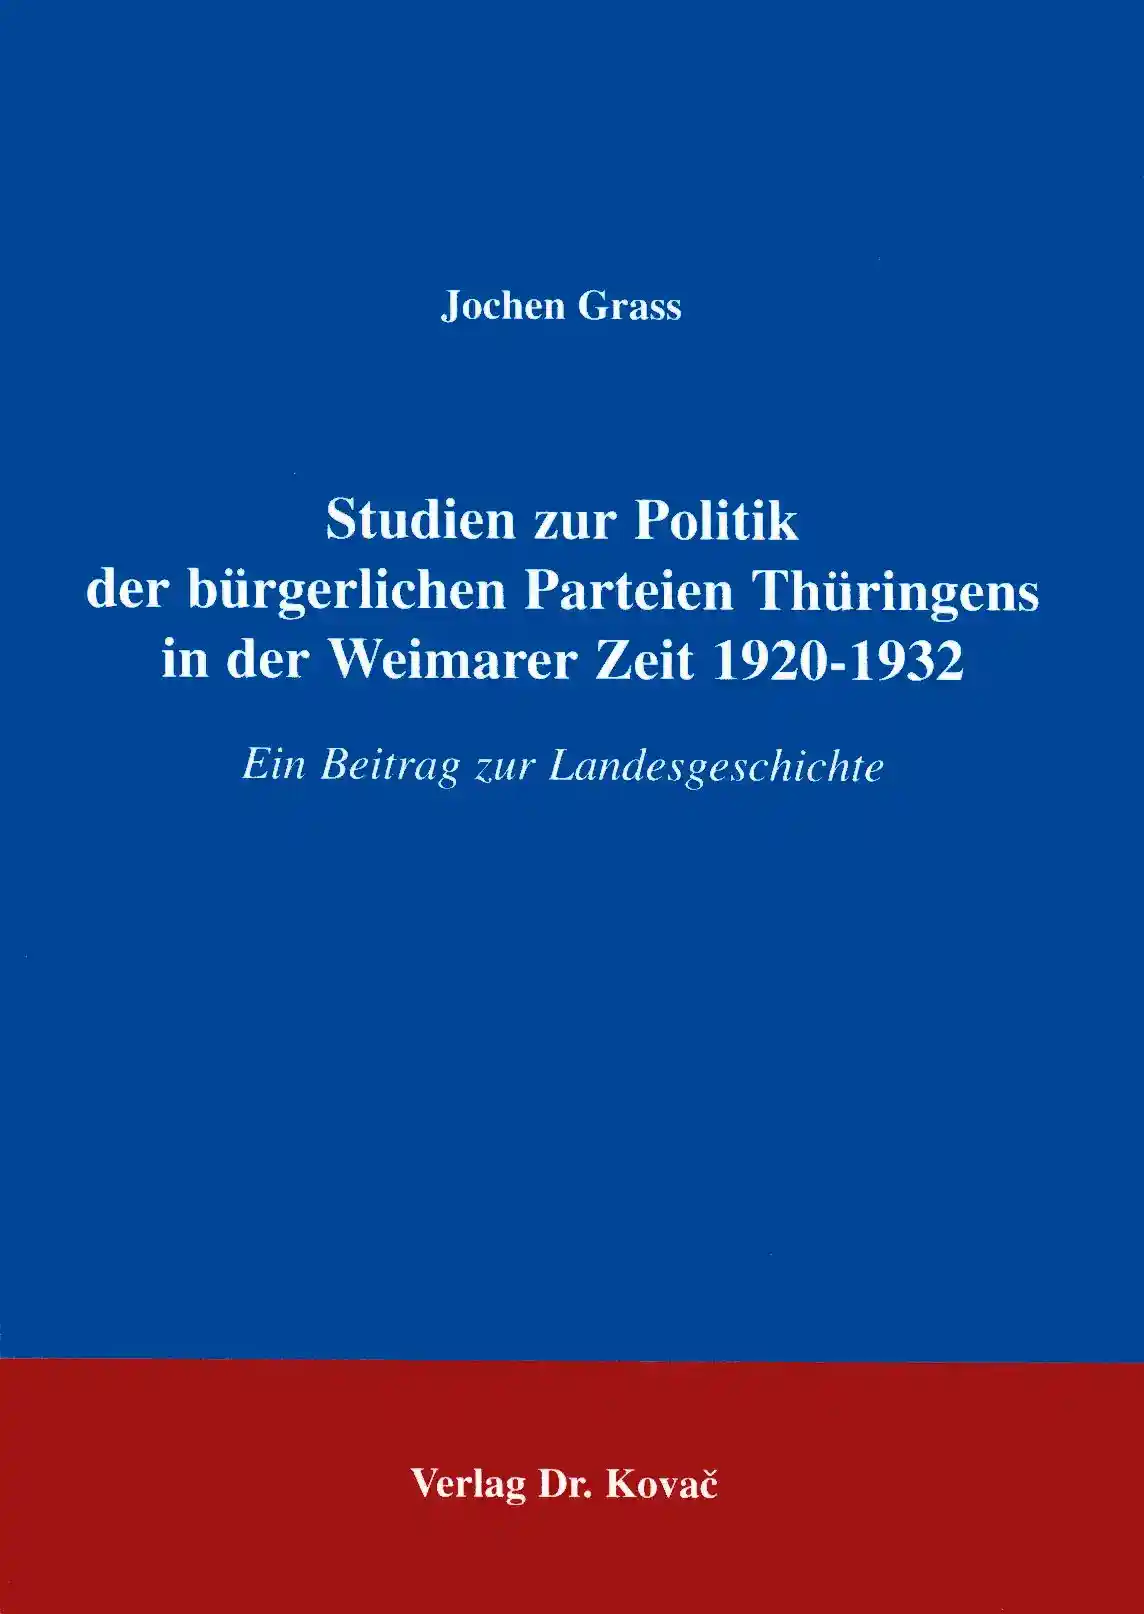 Studien zur Politik der bürgerlichen Parteien Thüringens in der Weimarer Zeit 1920 - 1932 (Forschungsarbeit)